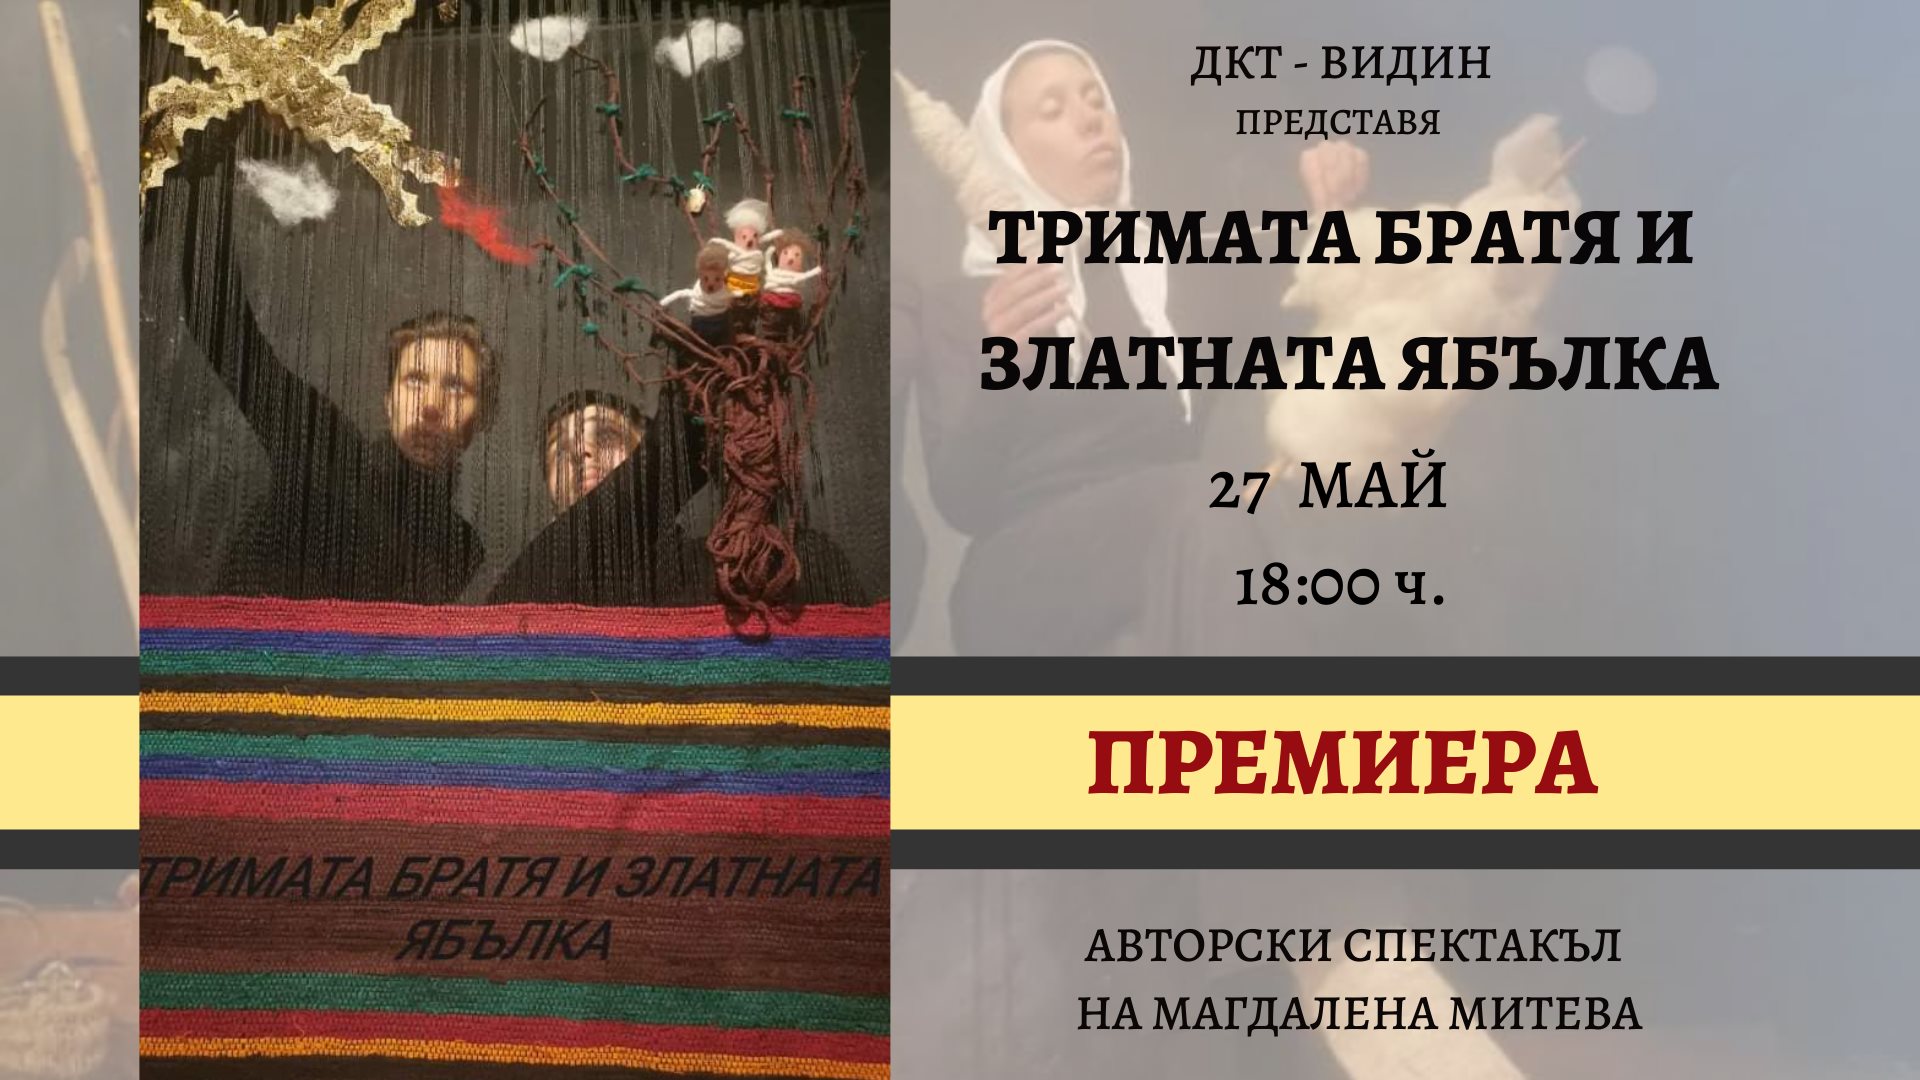 Премиера на „Тримата братя и златната ябълка” в Държавен куклен театър – Видин